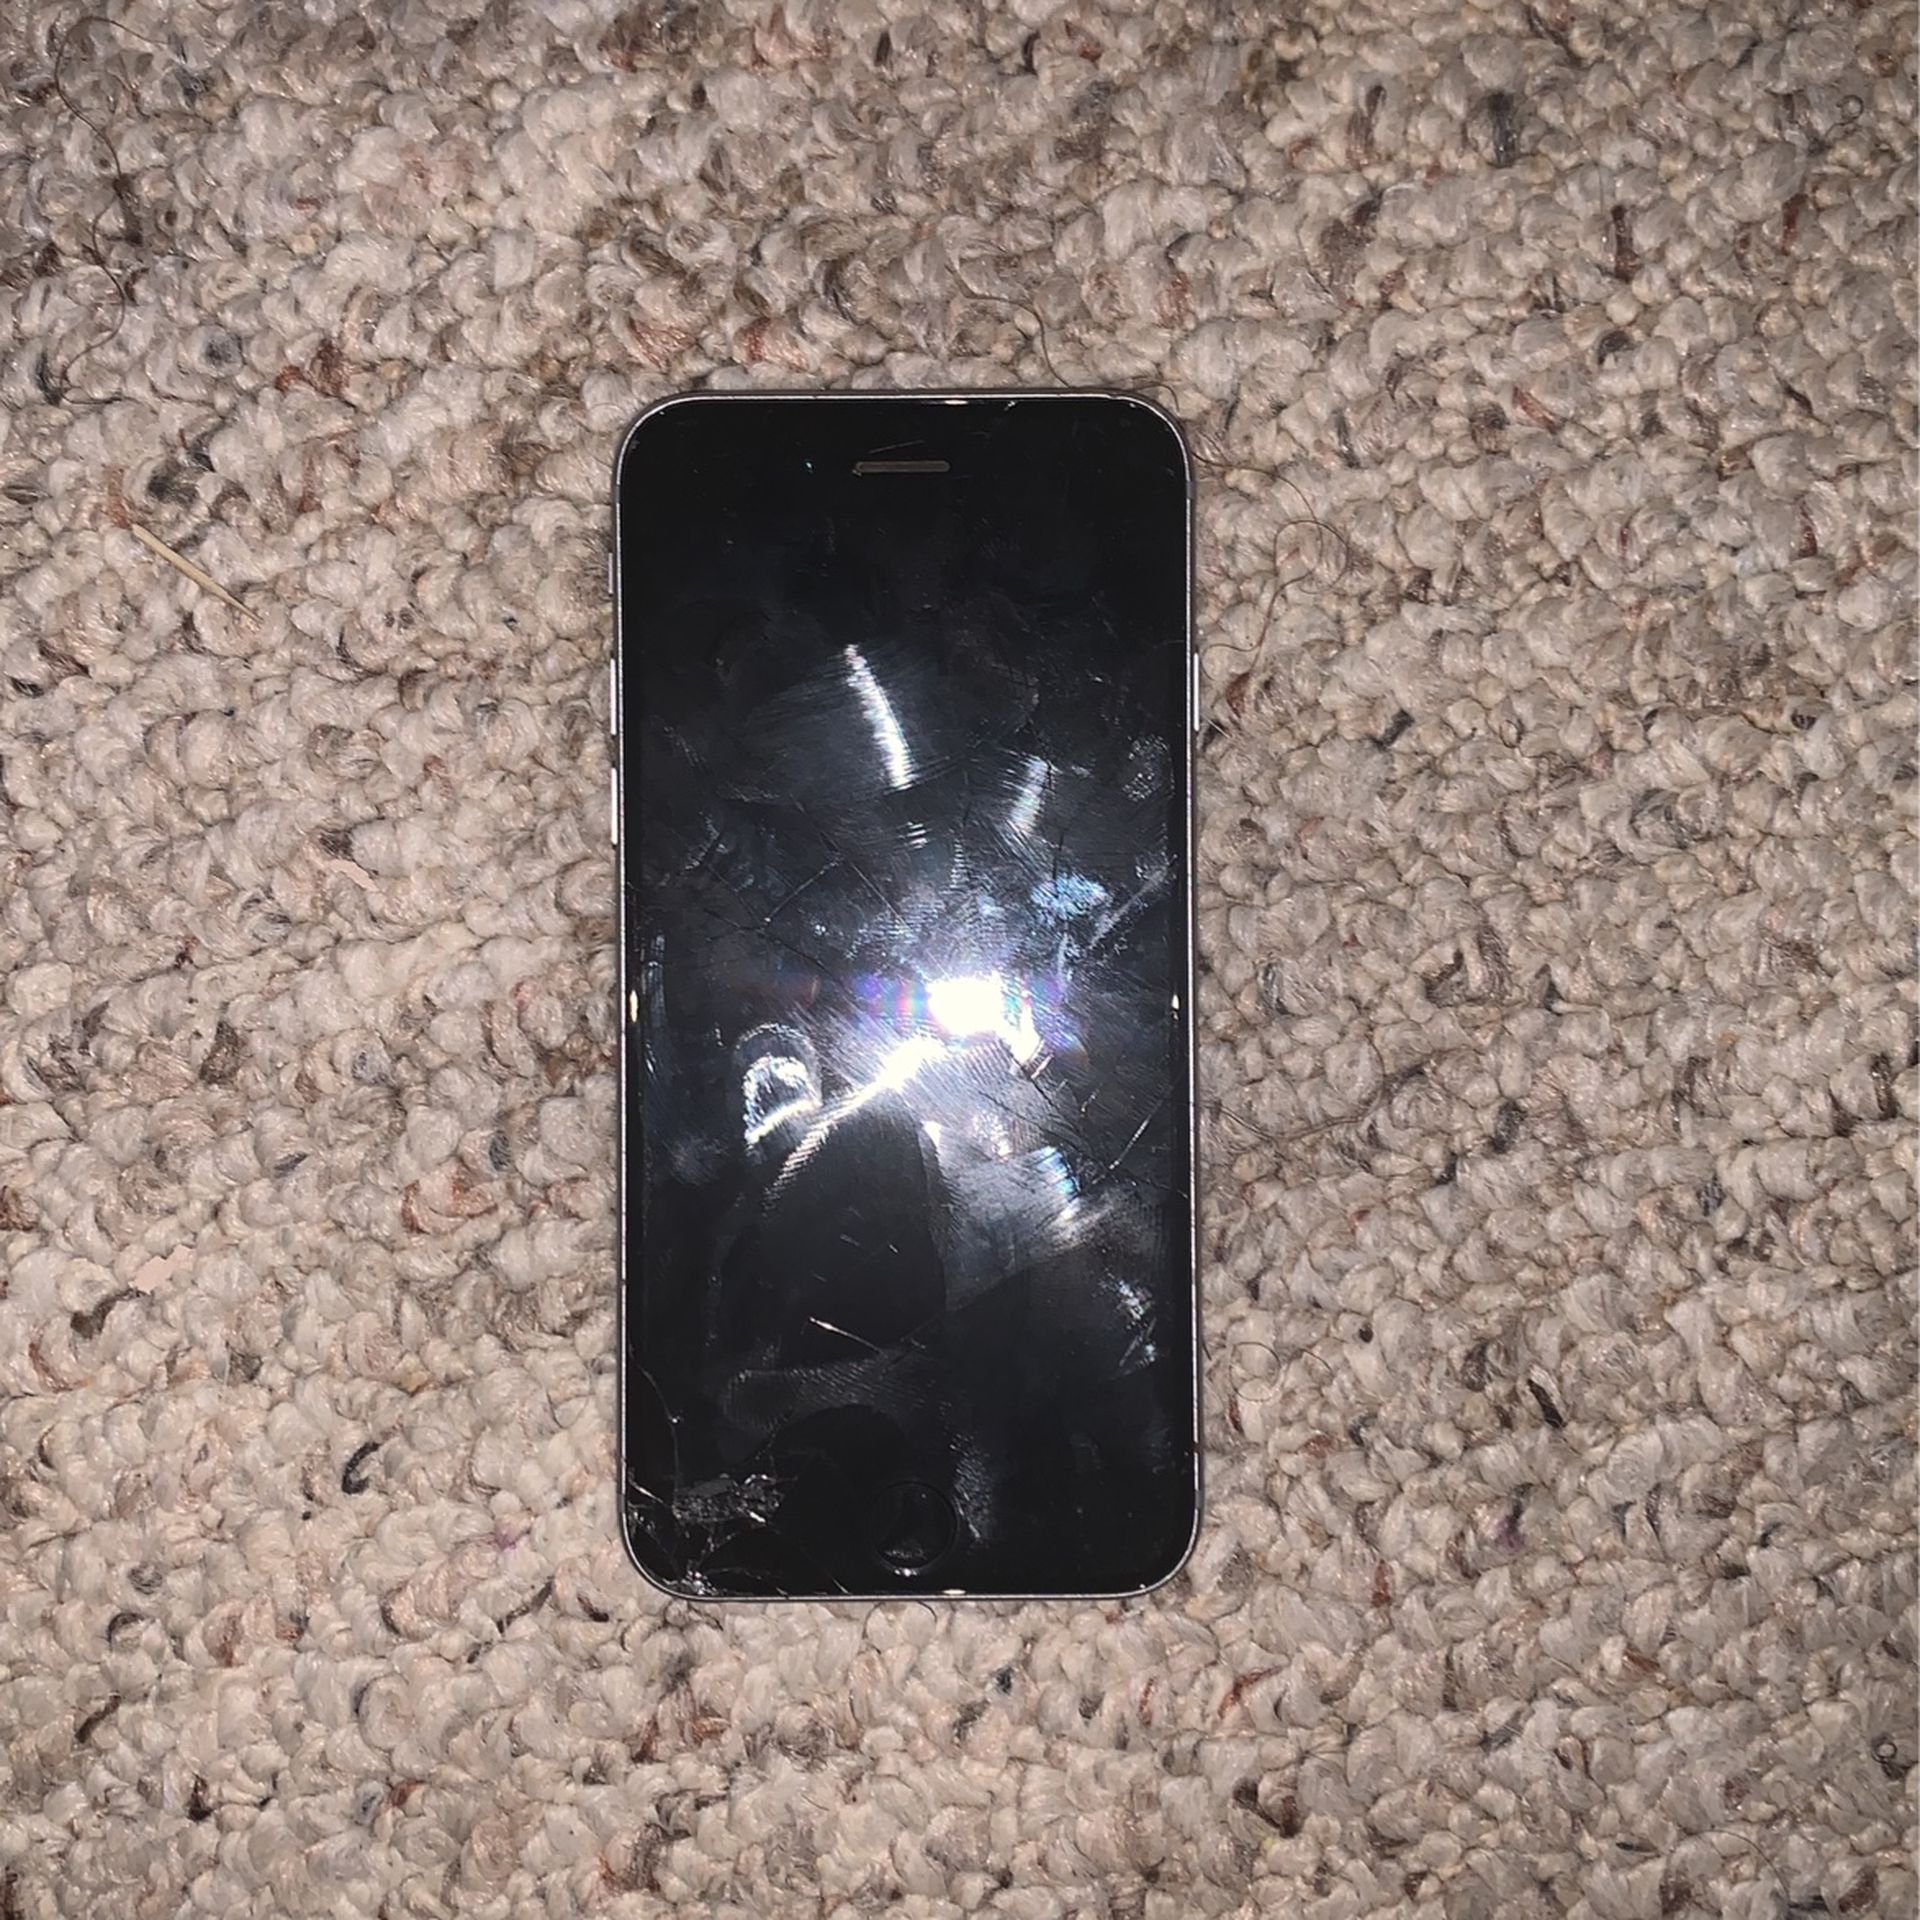 iPhone 6S (locked) Cracked